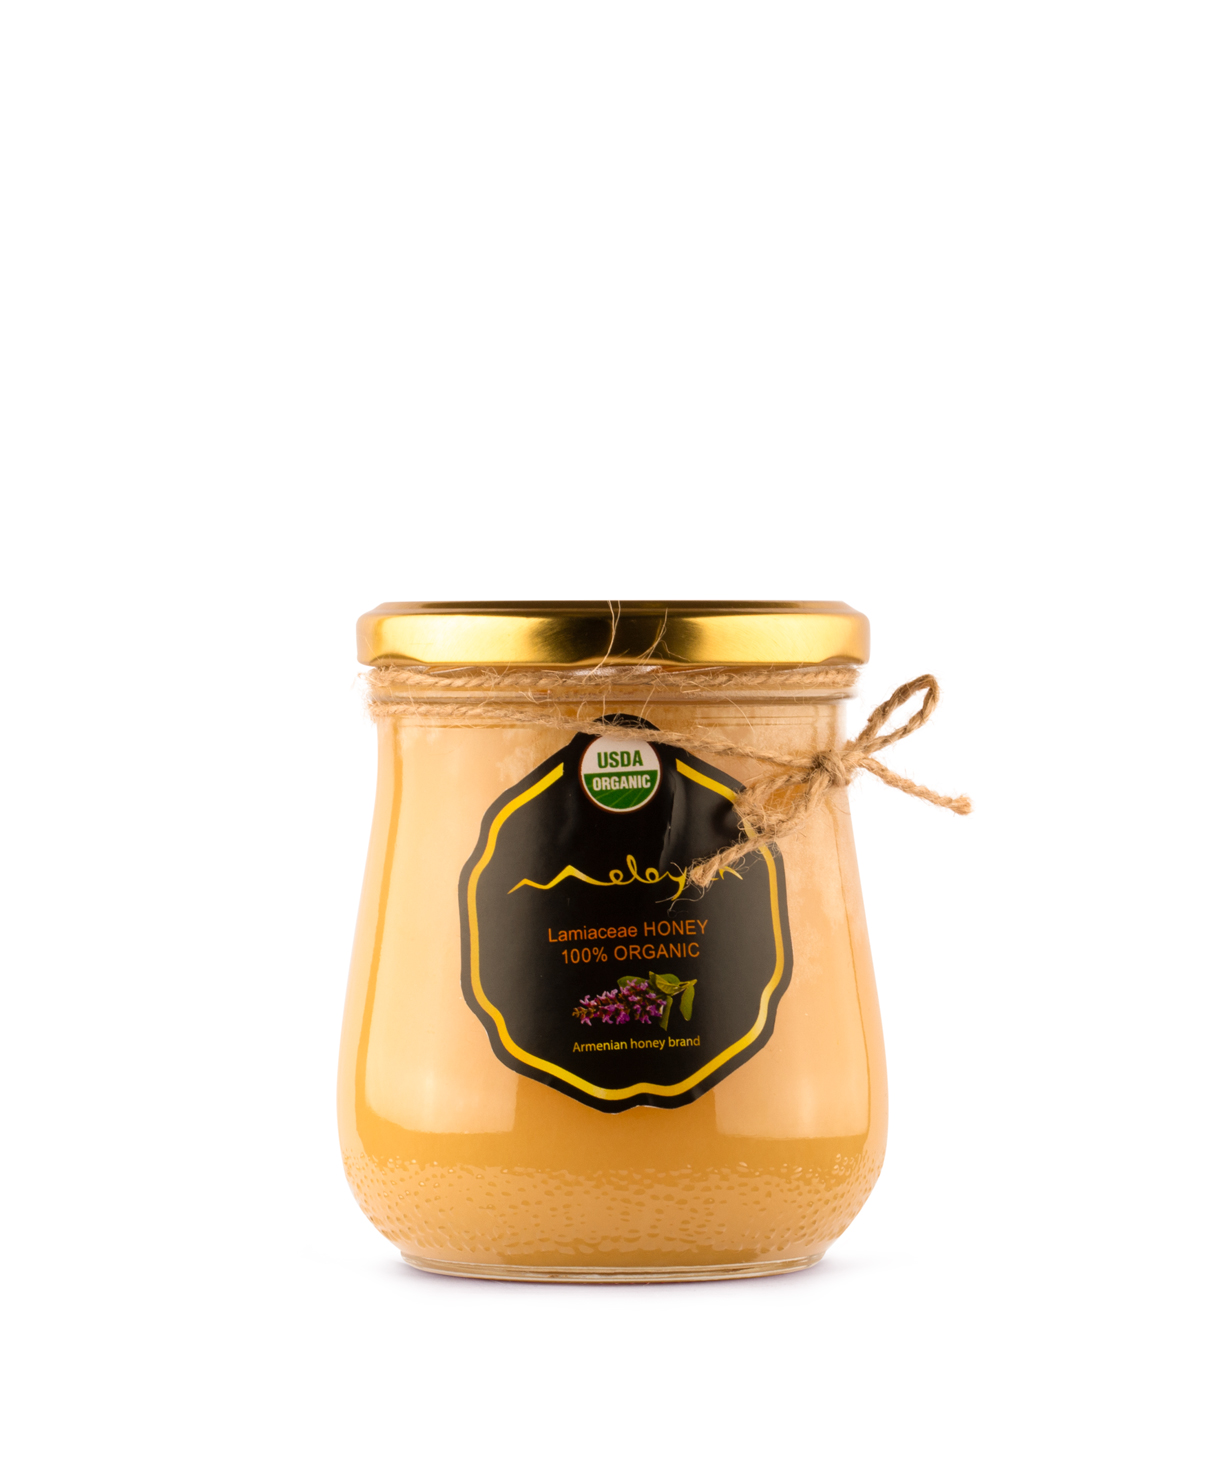 Մեղր «Meloyan Organic Honey» օրգանիկ, եղեսպակի